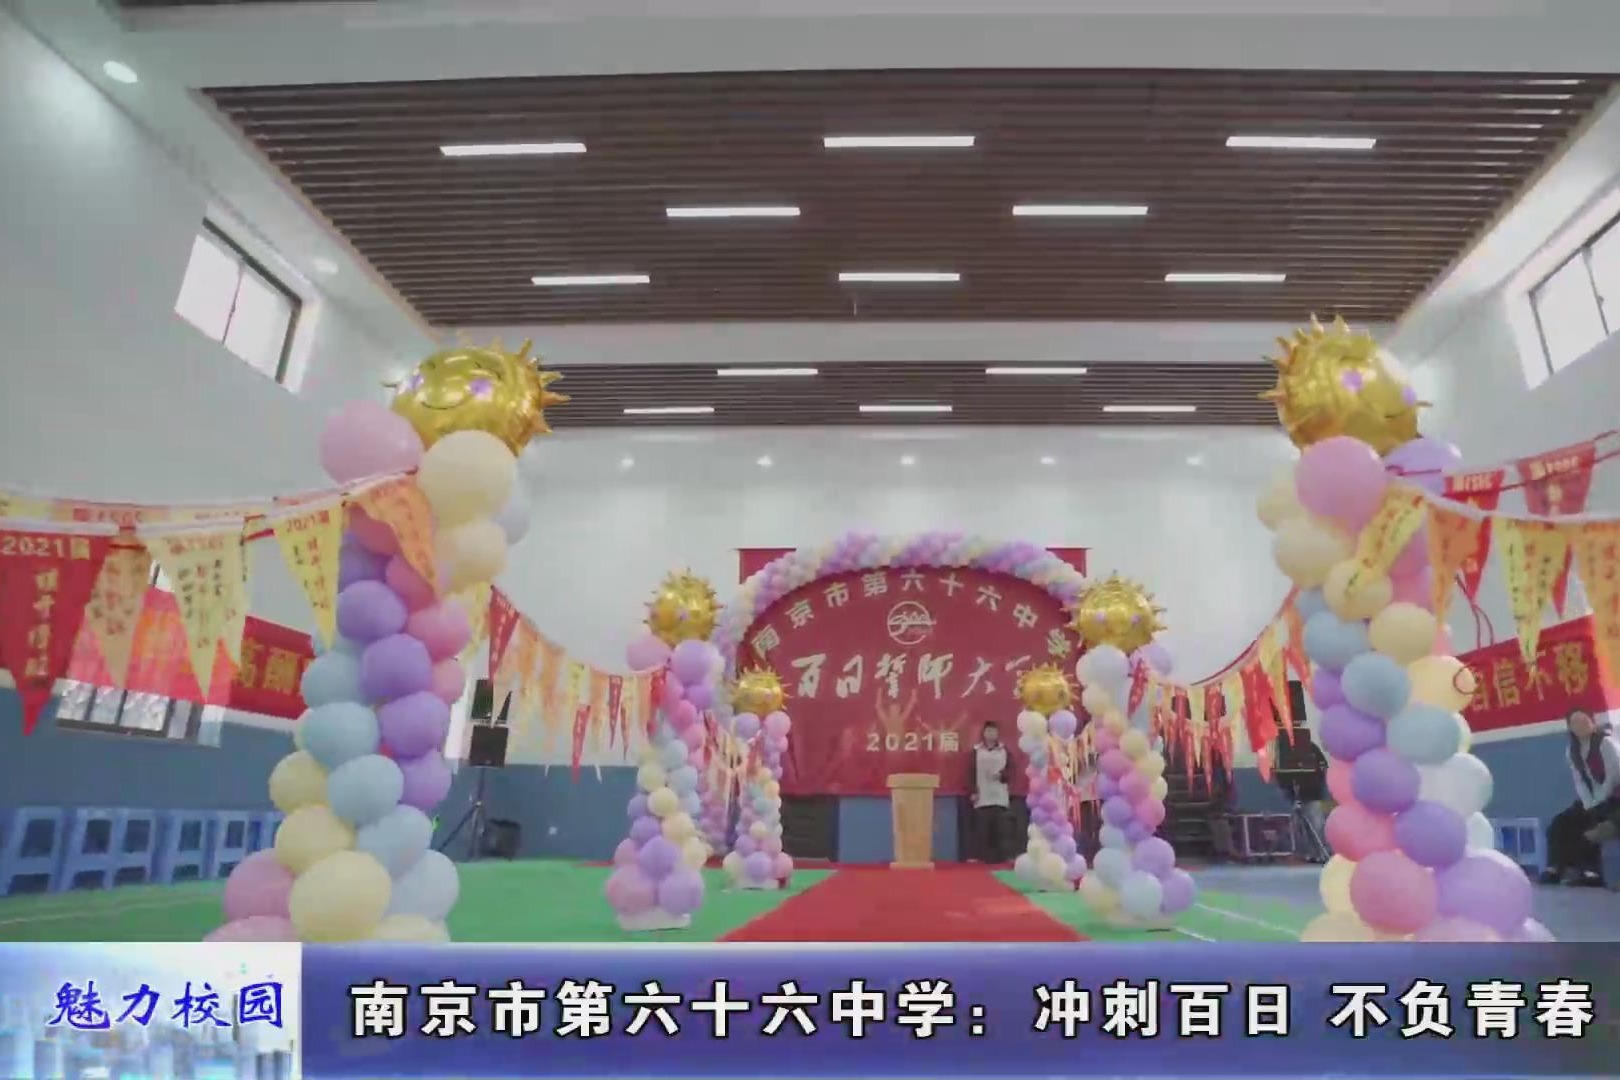 动态丨南京市第六十六中学:冲刺百日 不负青春